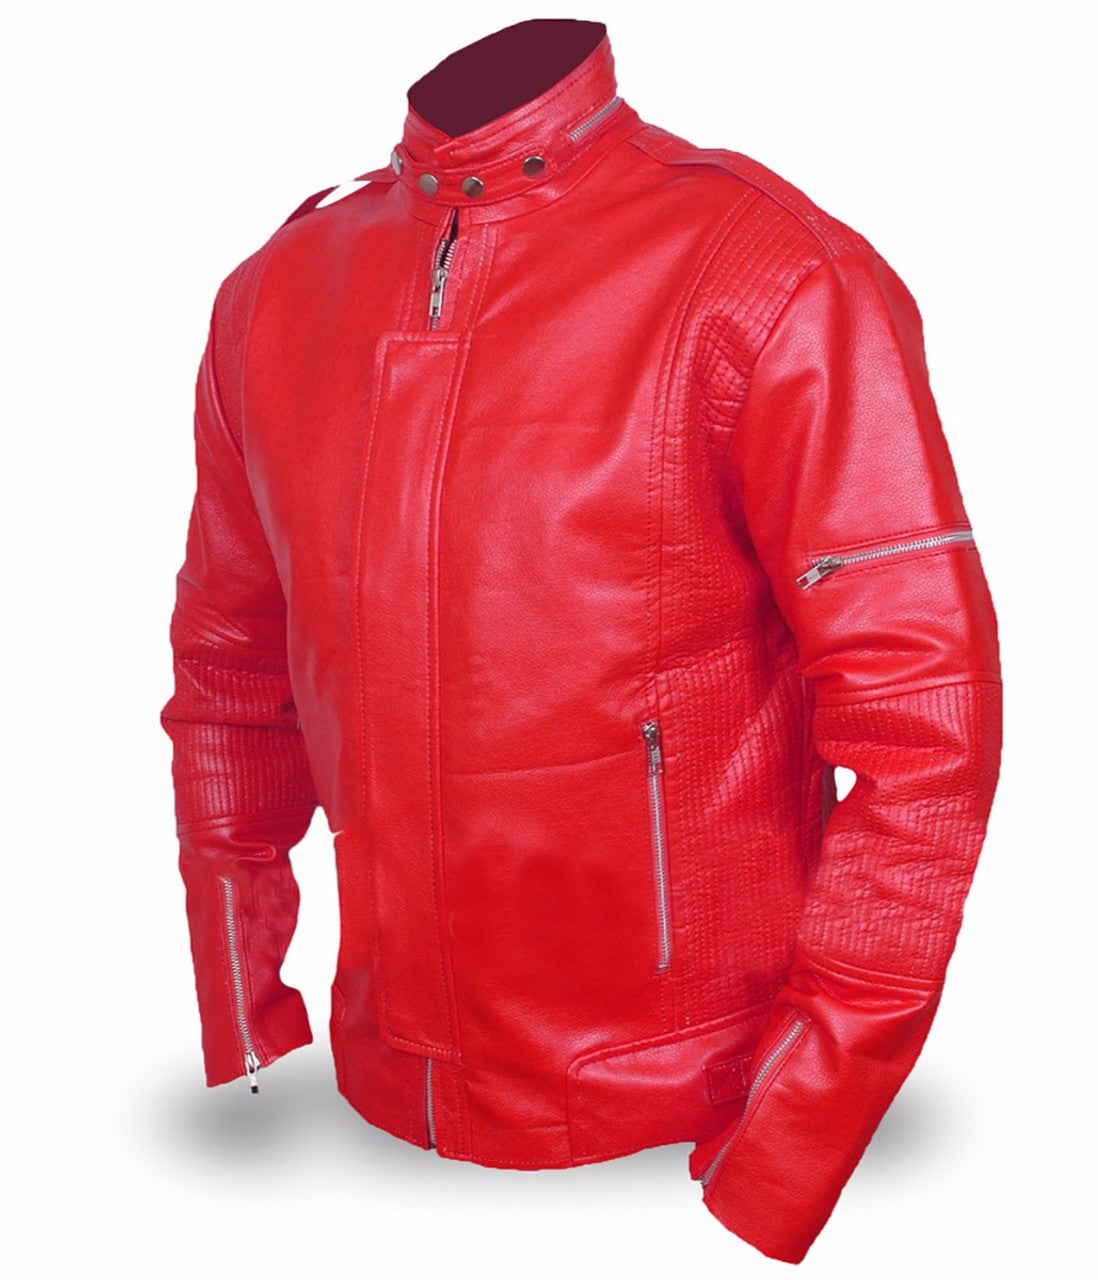 daft punk leather jacket men's leather jacket red biker leather jacket men's red leather jacket daft punk red jacket genuine leather jacket handmade leather jacket for men winter jacket men